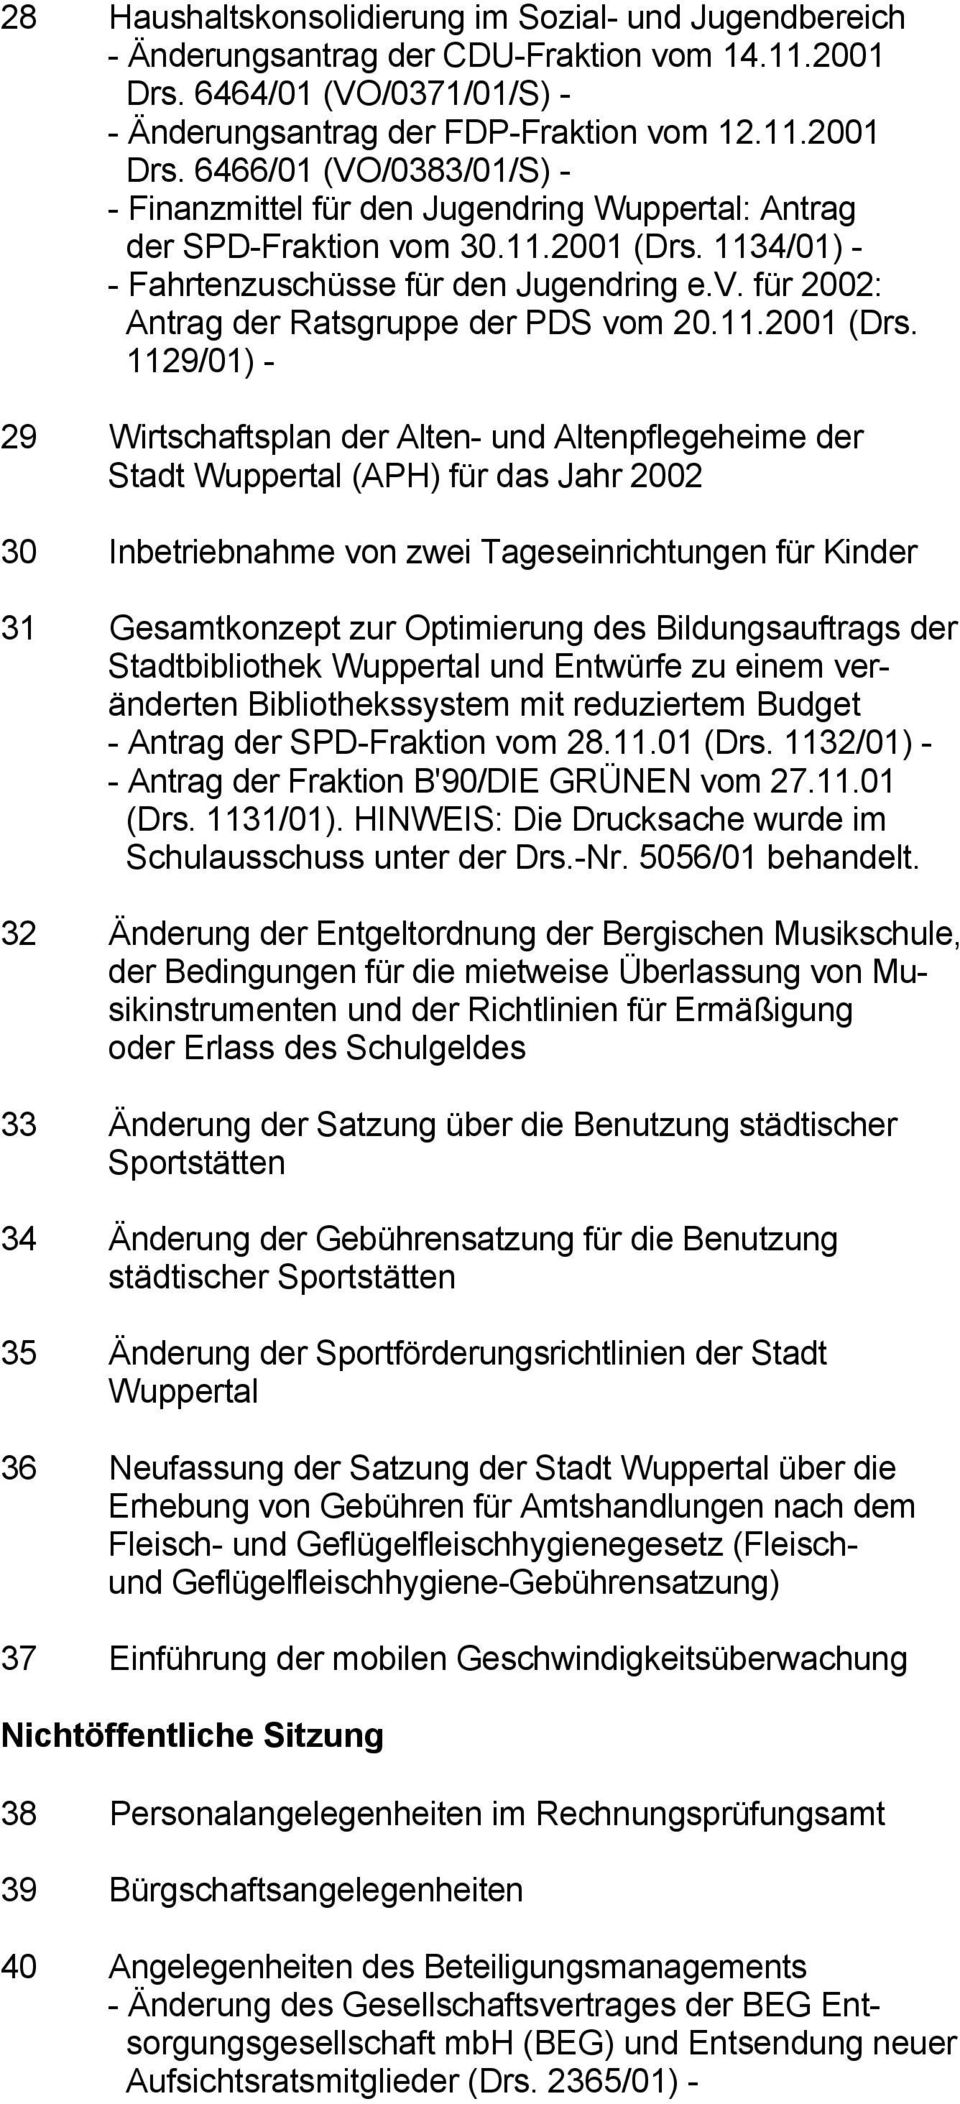 1134/01) - Fahrtenzuschüsse für den Jugendring e.v. für 2002: Antrag der Ratsgruppe der PDS vom 20.11.2001 (Drs.